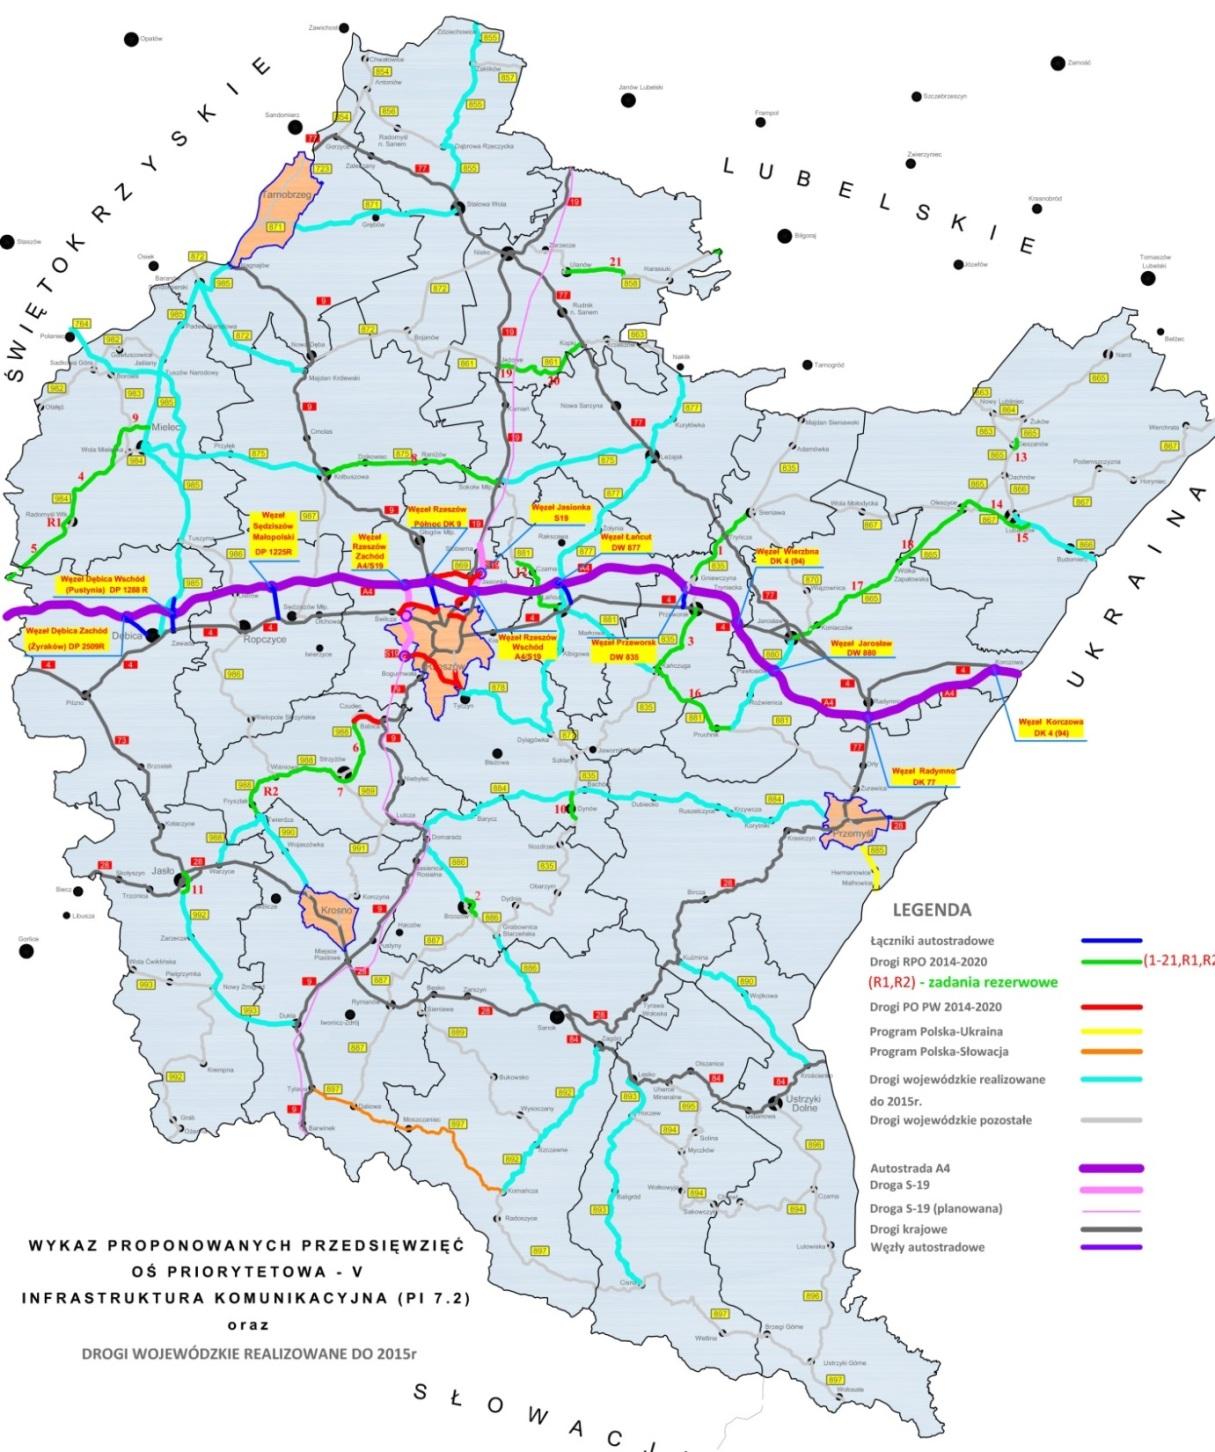 Układ komunikacyjny województwa podkarpackiego drogi wojewódzkie i krajowe S74 średni dobowy ruch (SDR 2010) wyrażony liczbą pojazdów na dobę (p/d): S19 (E371) drogi wojewódzkie 886